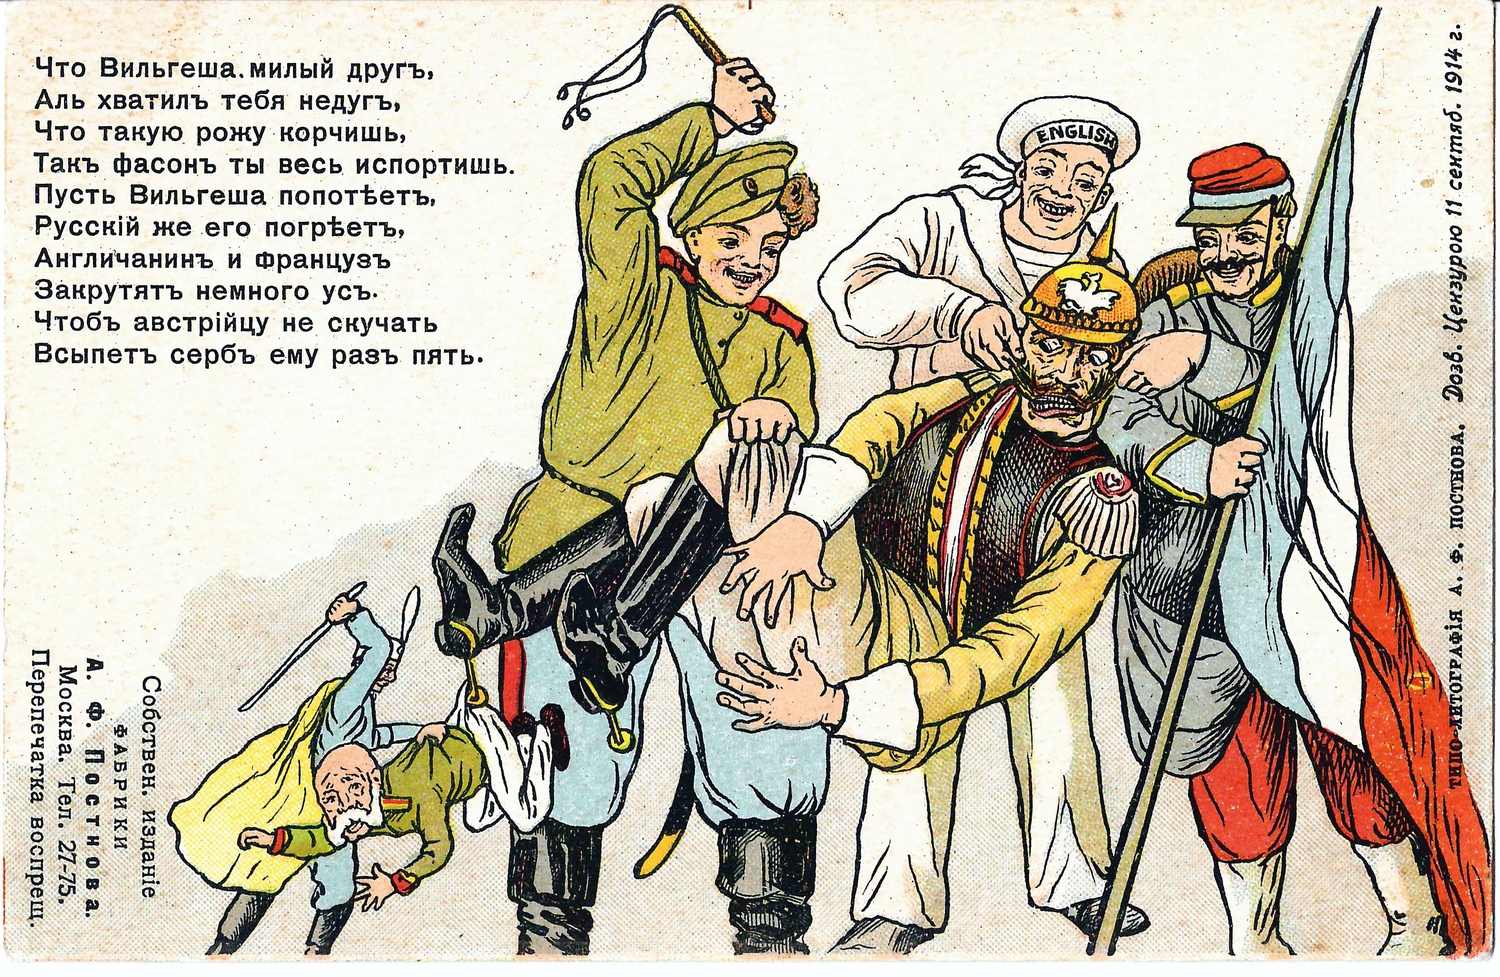 Открытка «Что Вильгеша, милый друг…» Издание А.Ф. Постнова, 1914.